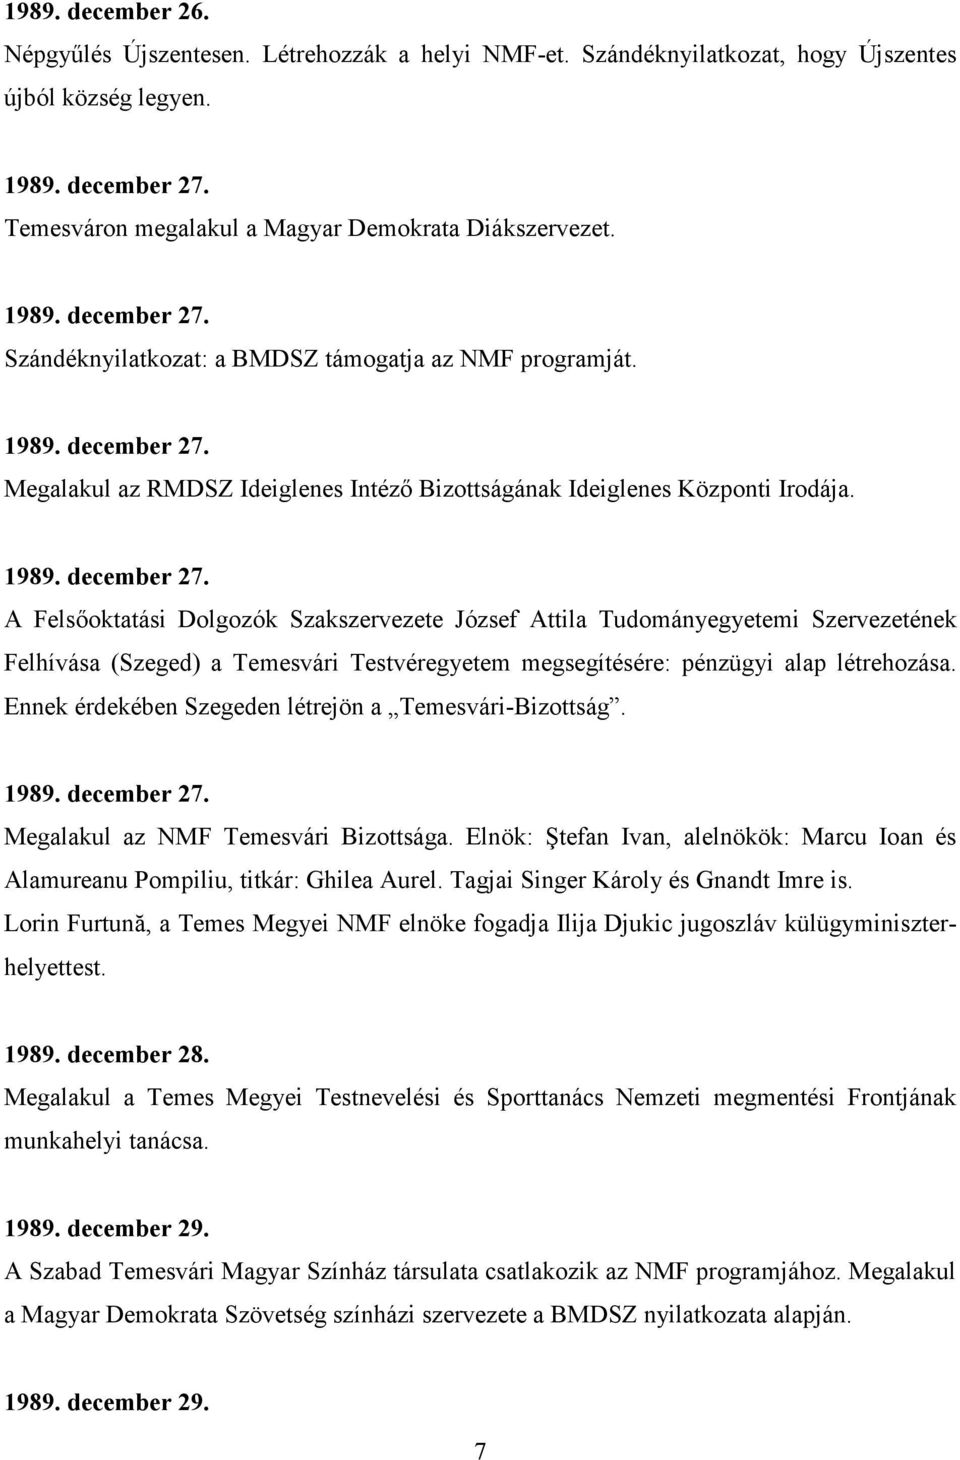 Ennek érdekében Szegeden létrejön a Temesvári-Bizottság. 1989. december 27. Megalakul az NMF Temesvári Bizottsága.